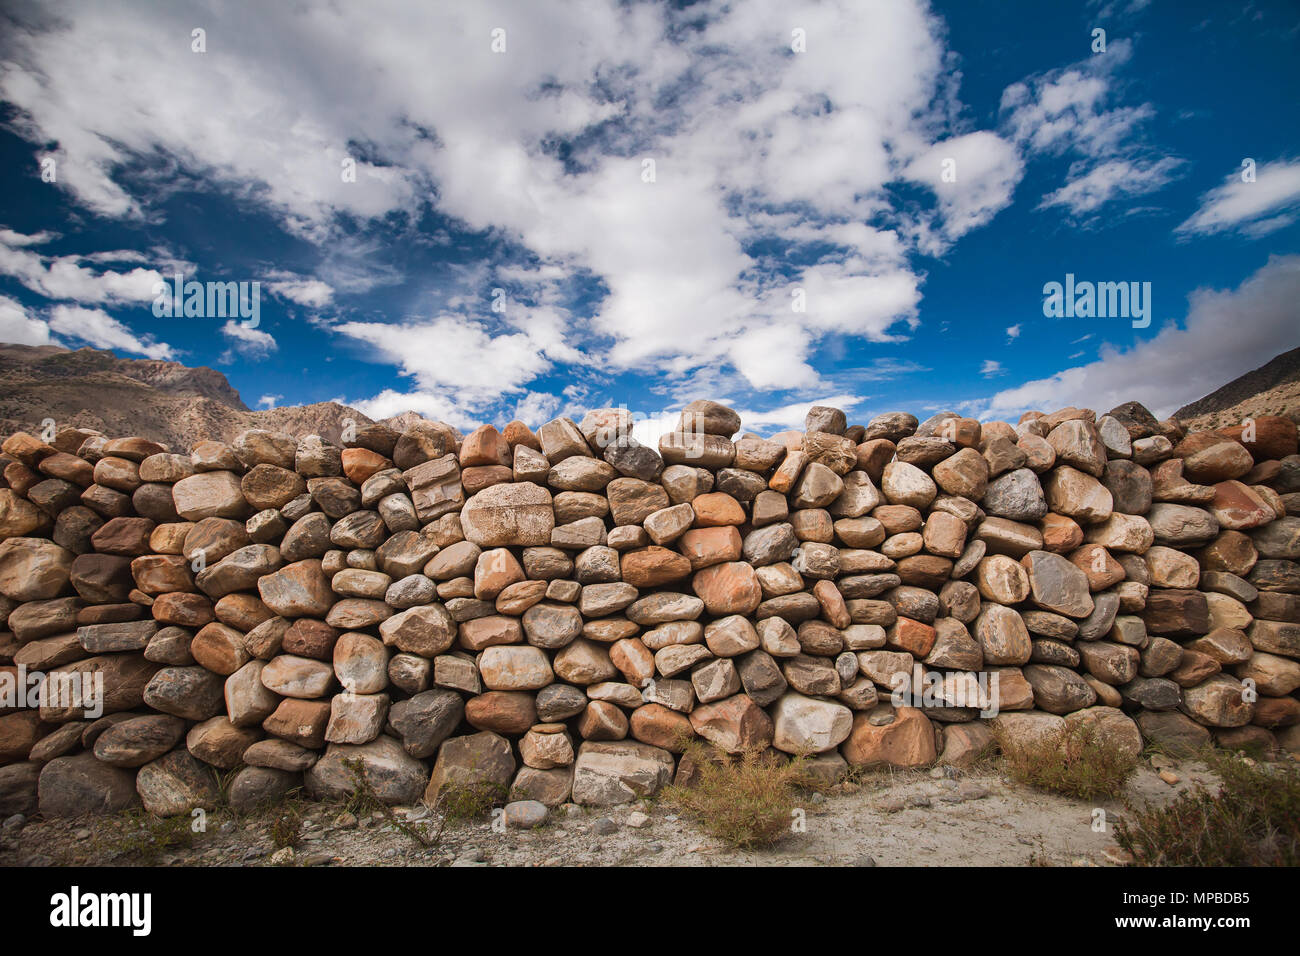 La pared de piedra construida a partir de los diferentes tamaños de los cantos rodados en gris, marrón, tawny matices. Brillante cielo azul con nubes blancas. Fondo ideal para las ilustraciones y collages. Foto de stock